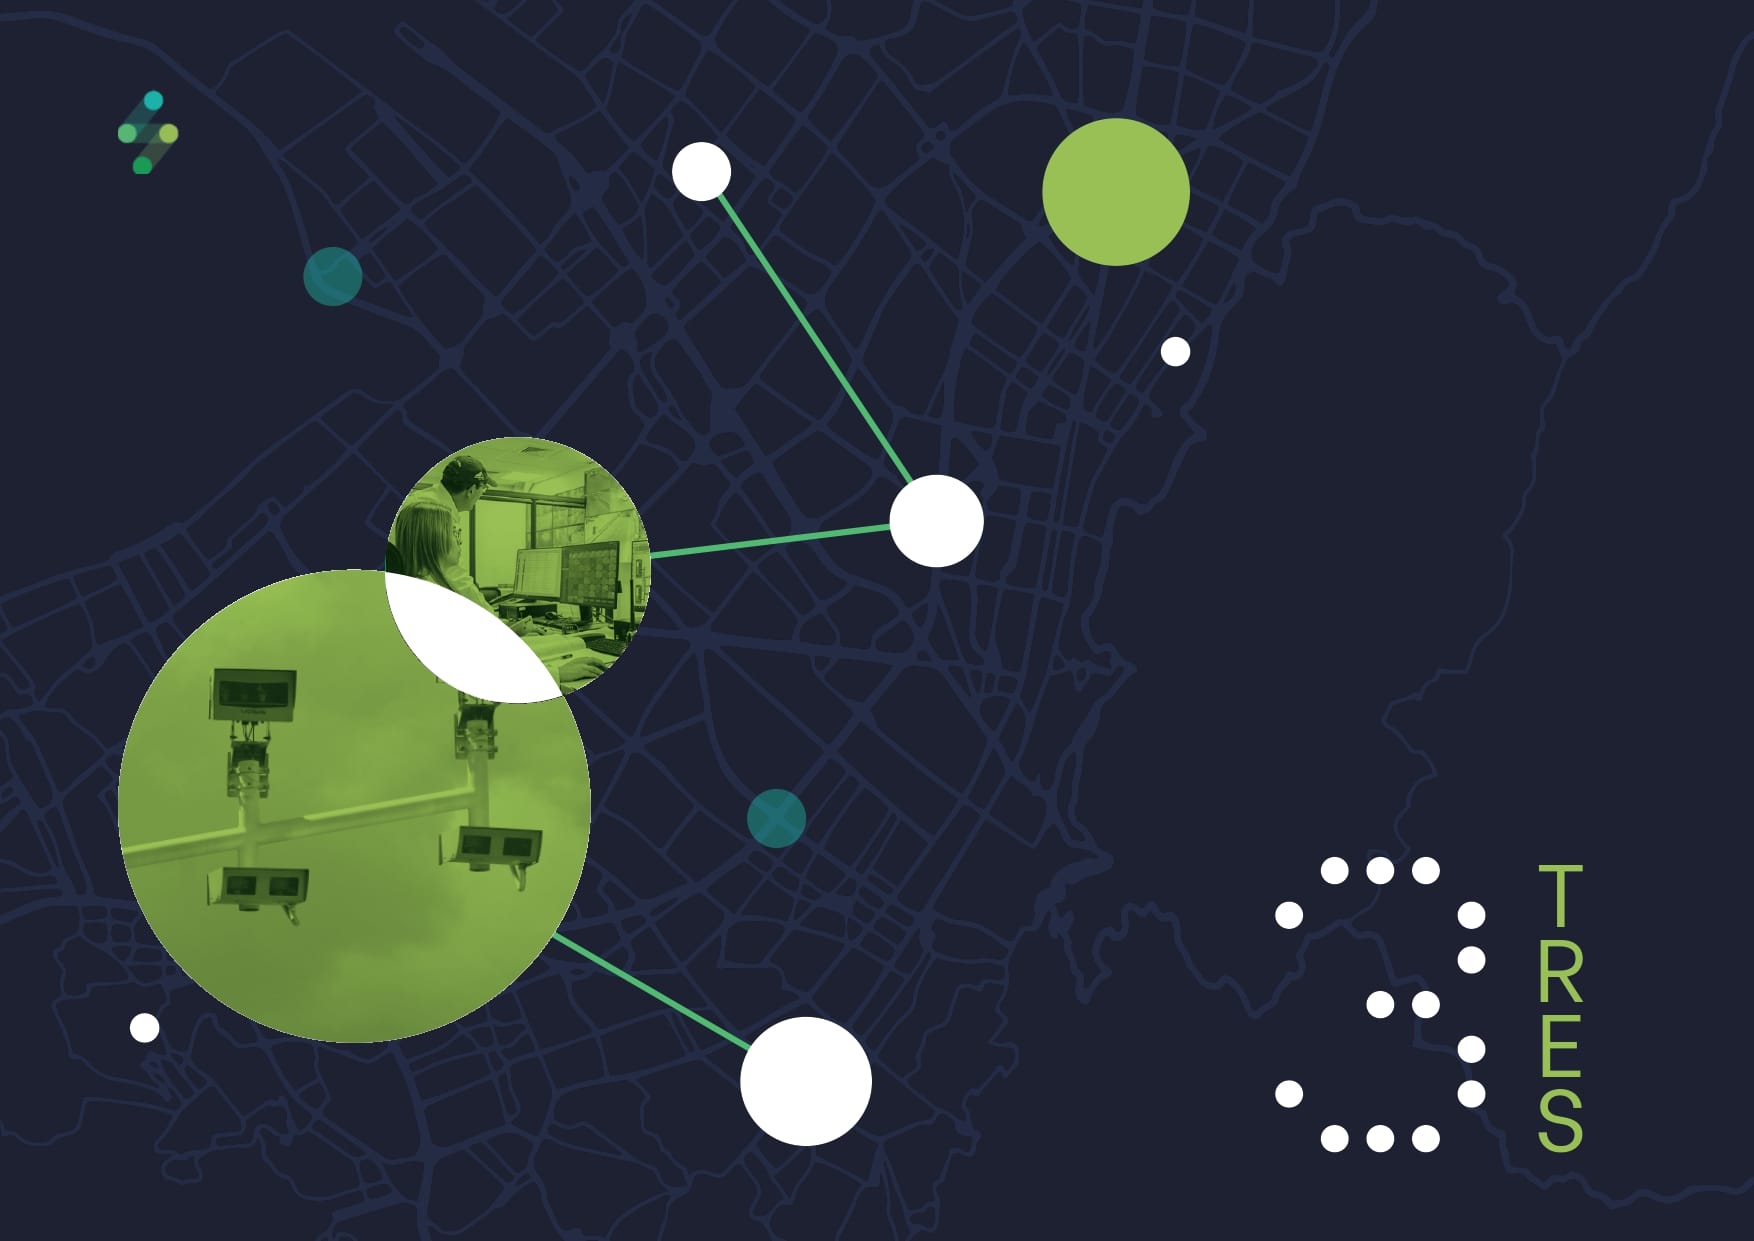 Un fondo de mapa digital con nodos y líneas de red abstractas, que presenta dos círculos verdes ampliados que contienen imágenes de tecnología; La palabra "gestión" es parcialmente visible en blanco.